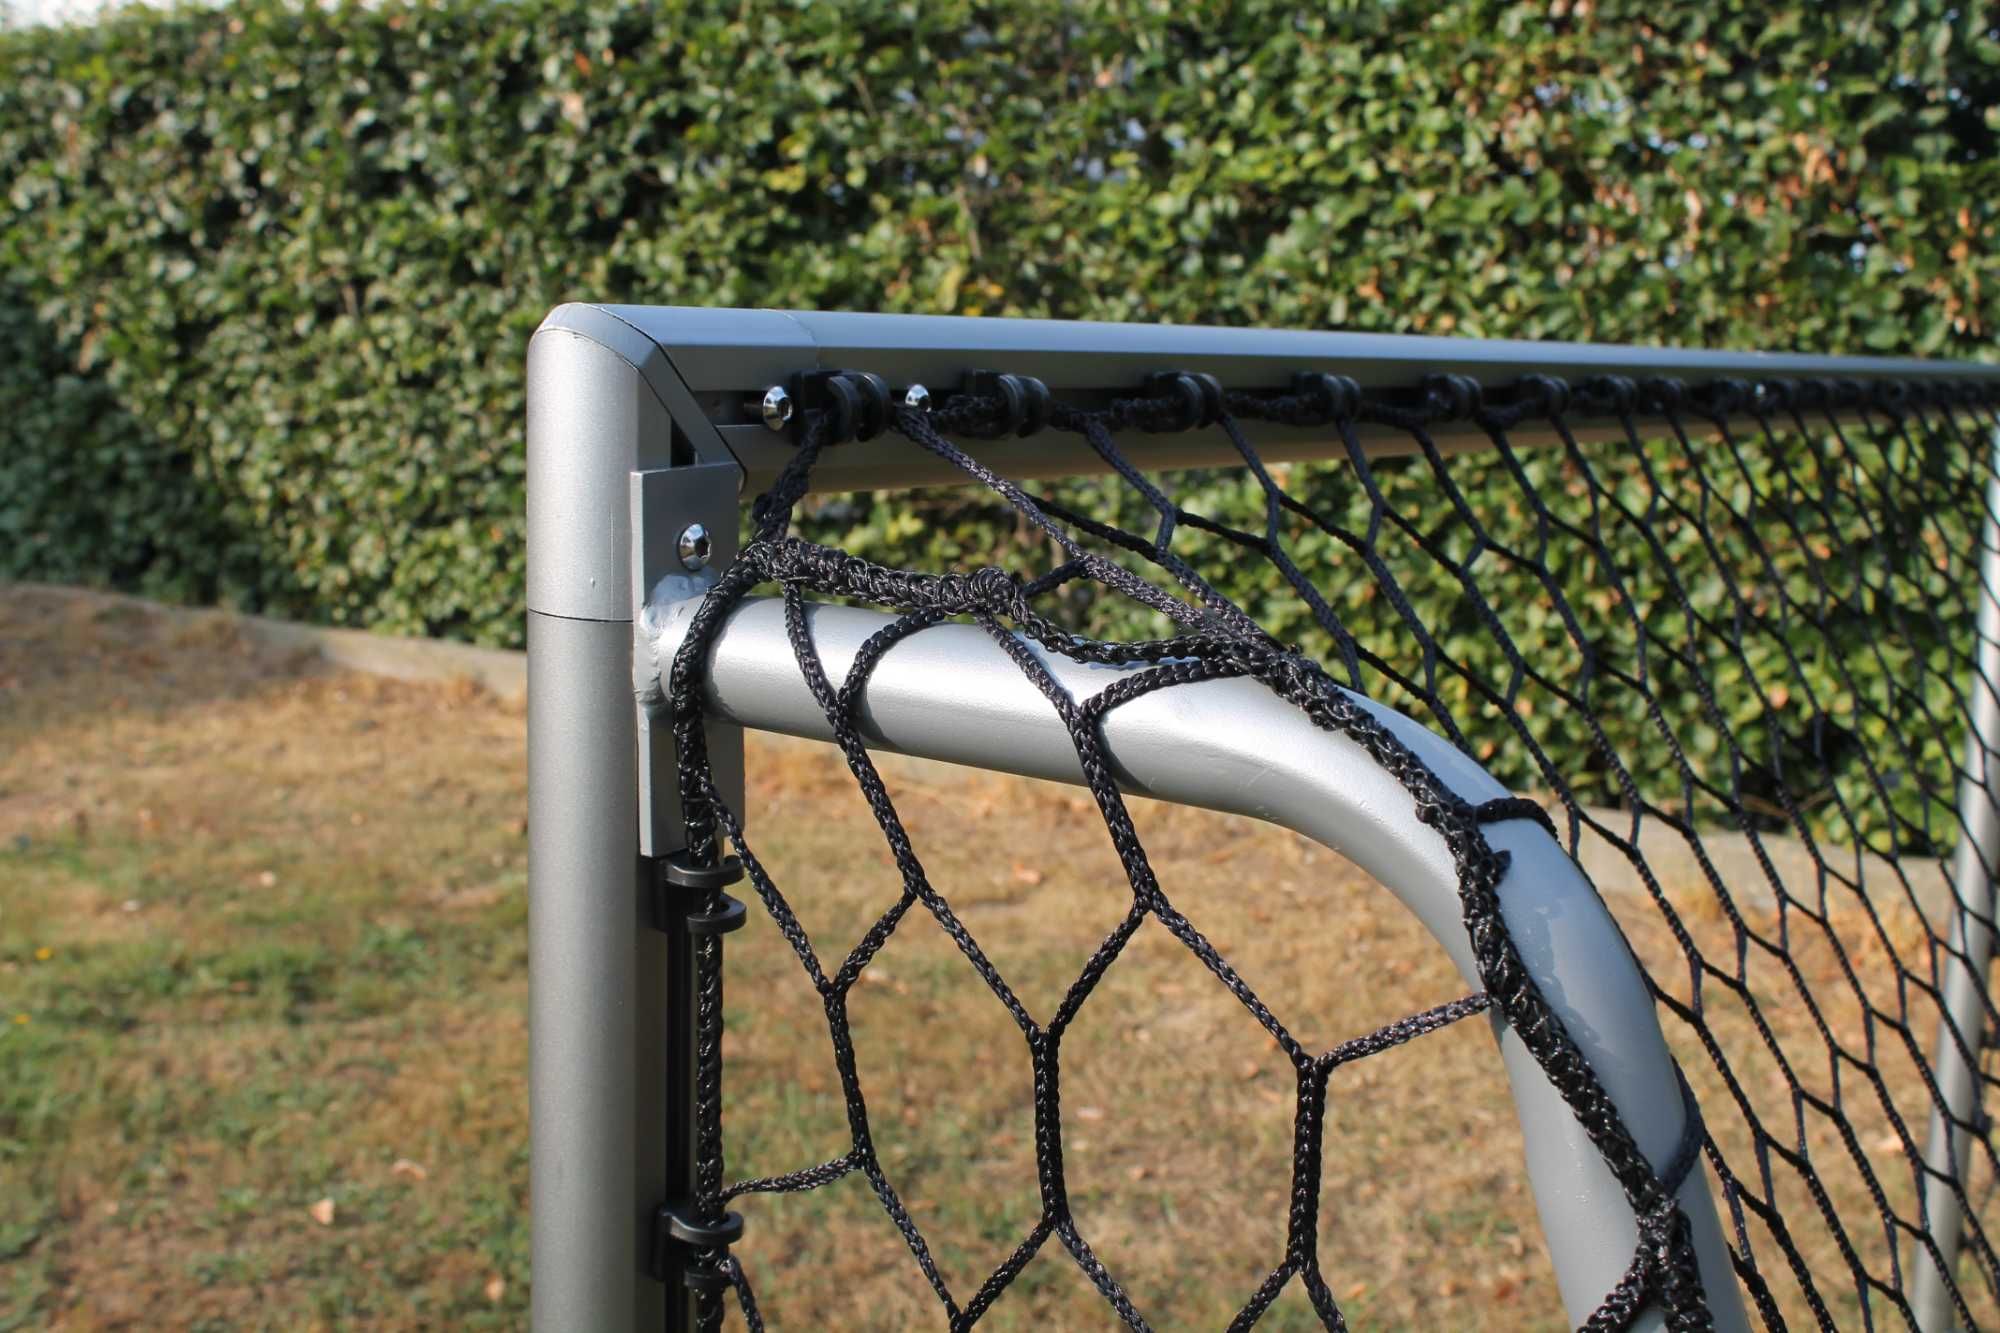 bramka piłkarska SCALA EXIT 500 x 200 5x2m przenośna aluminiowa SIATKA